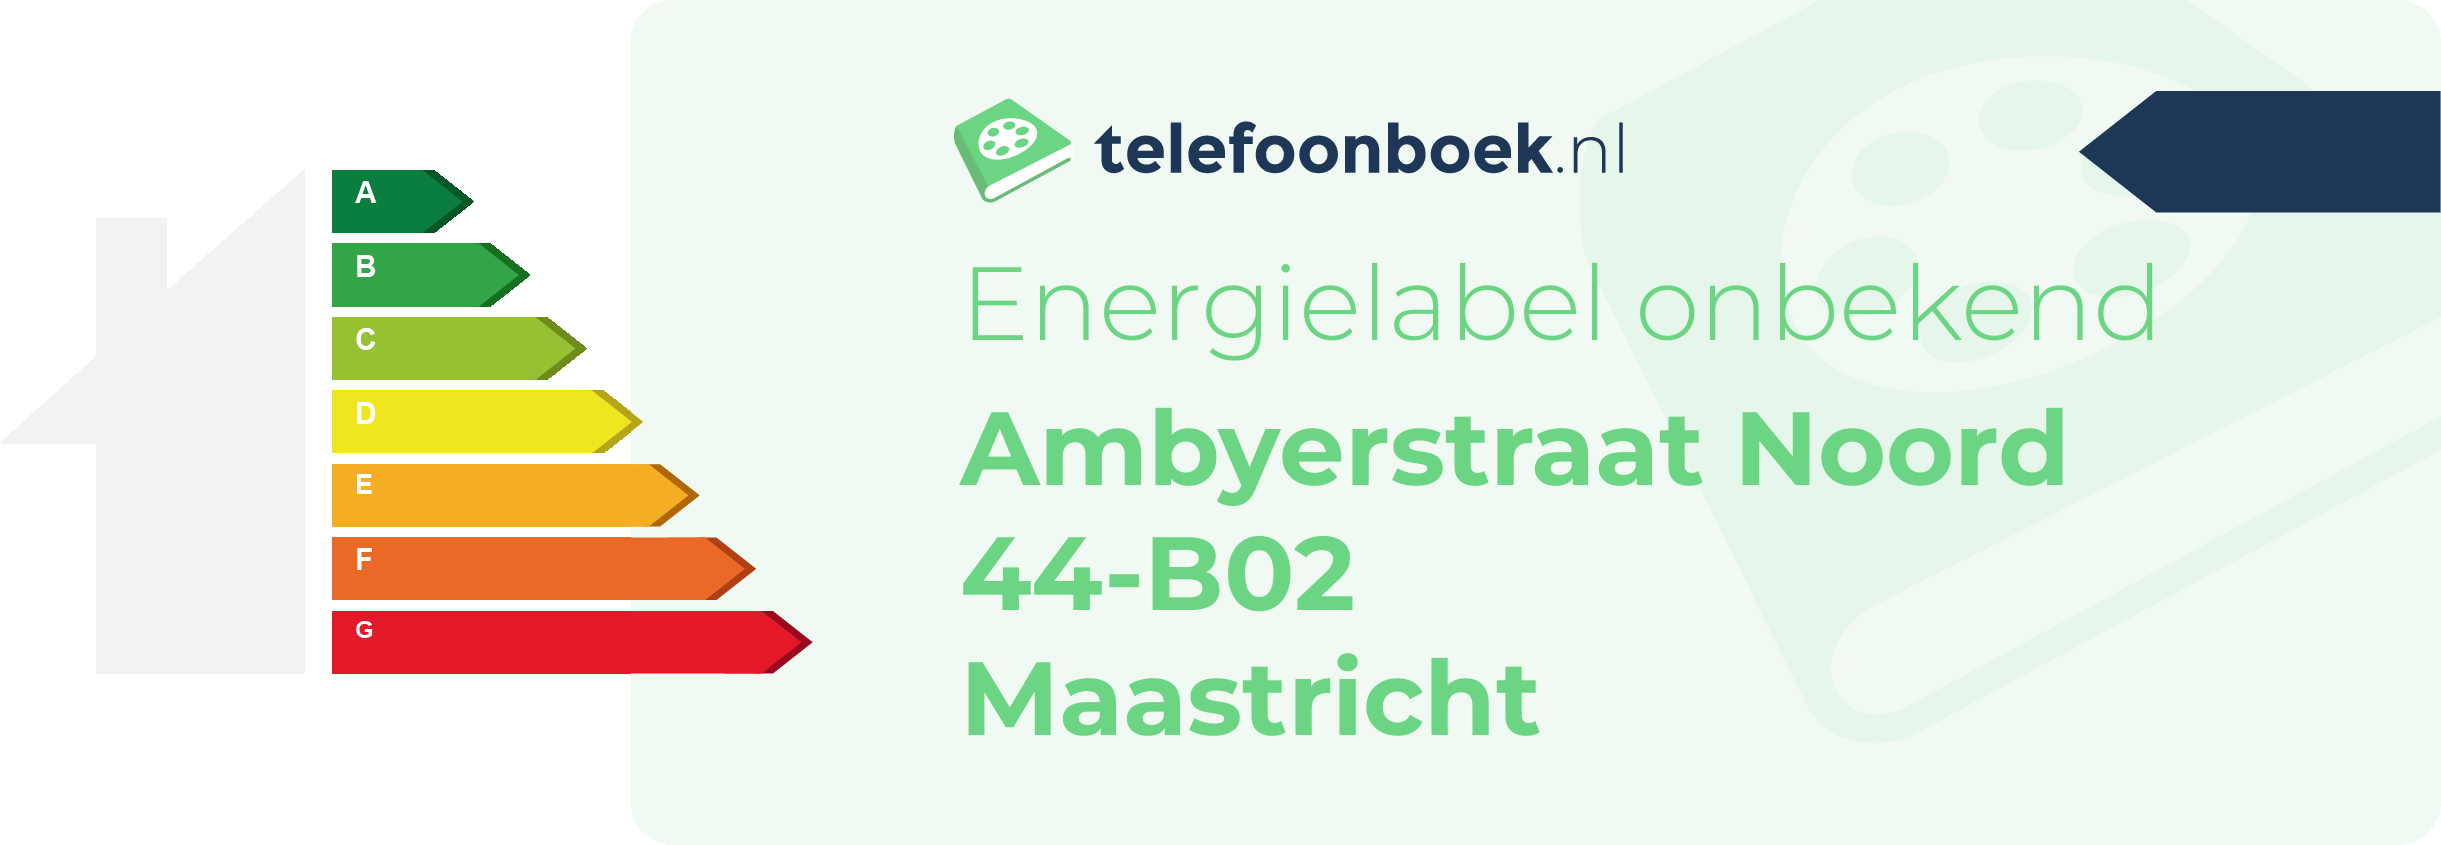 Energielabel Ambyerstraat Noord 44-B02 Maastricht